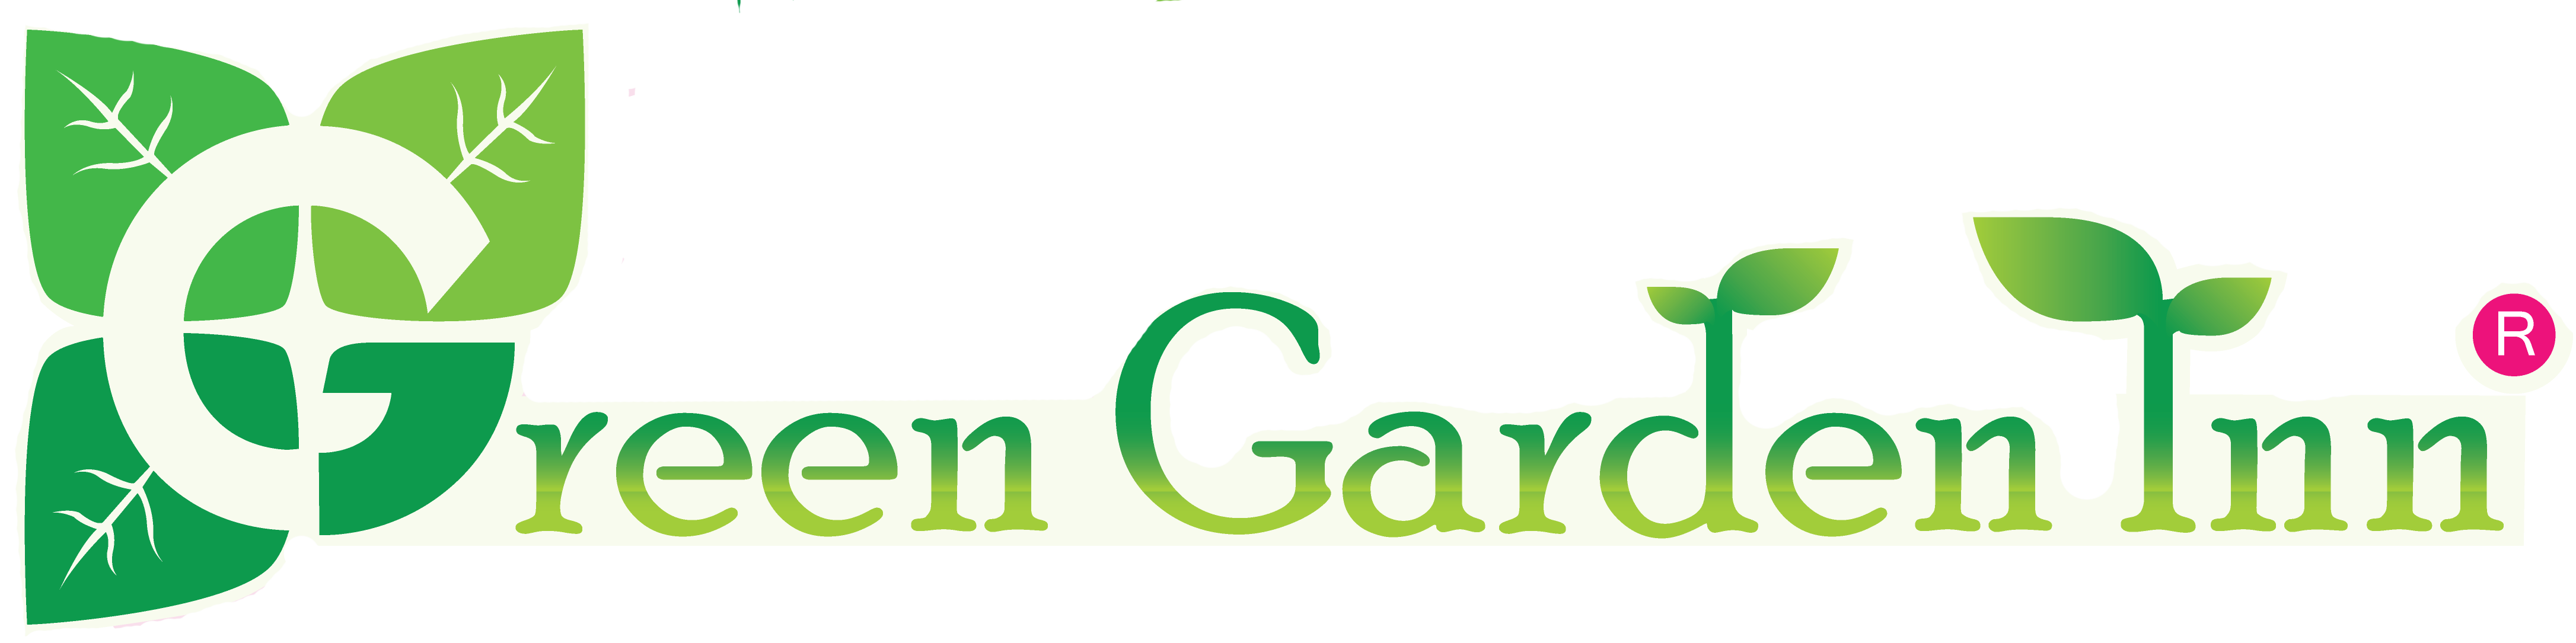 GALLERY Of Green Garden Inn.